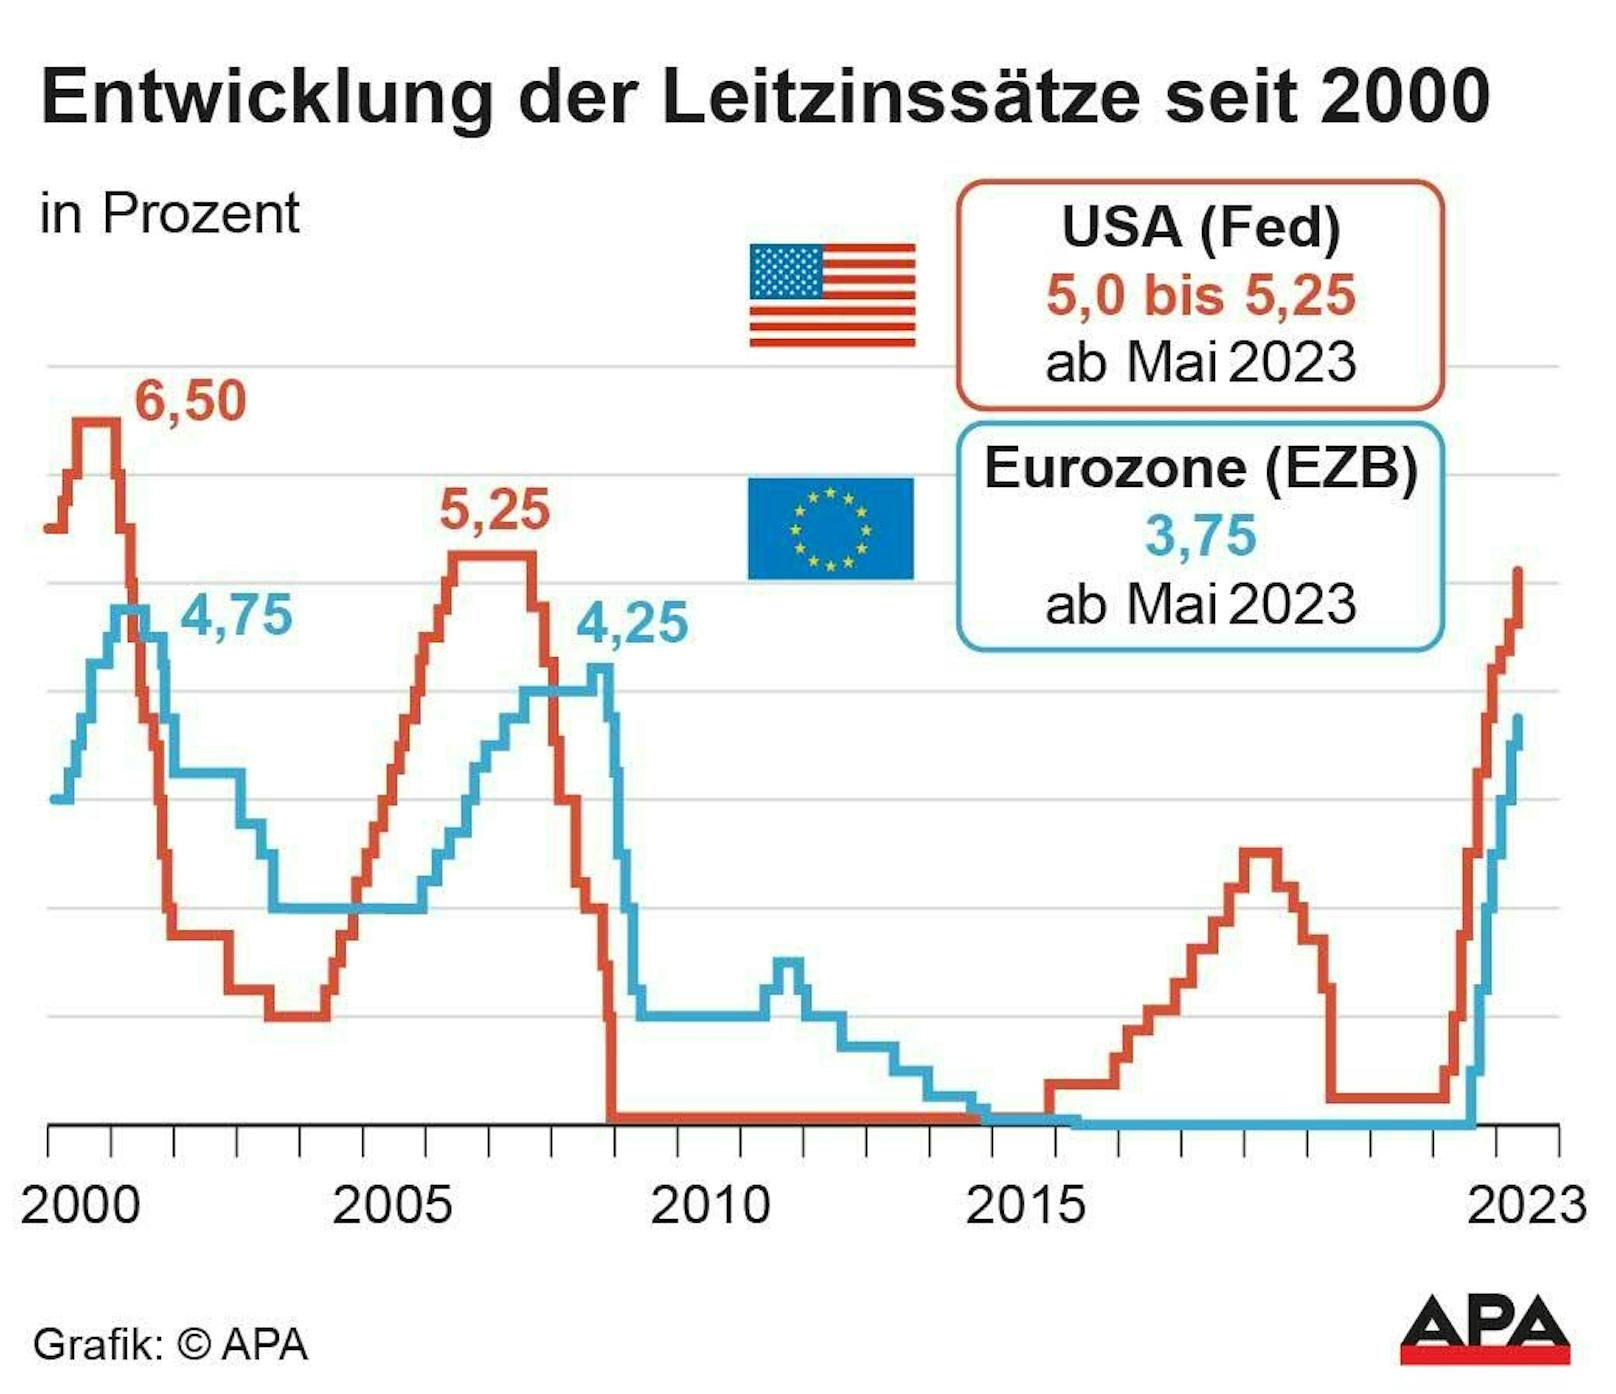 Der Leitzins in der Eurozone beträgt mittlerweile 3,75 Prozent. Vergangene Woche wurde er um 0,25 Prozentpunkte angehoben.